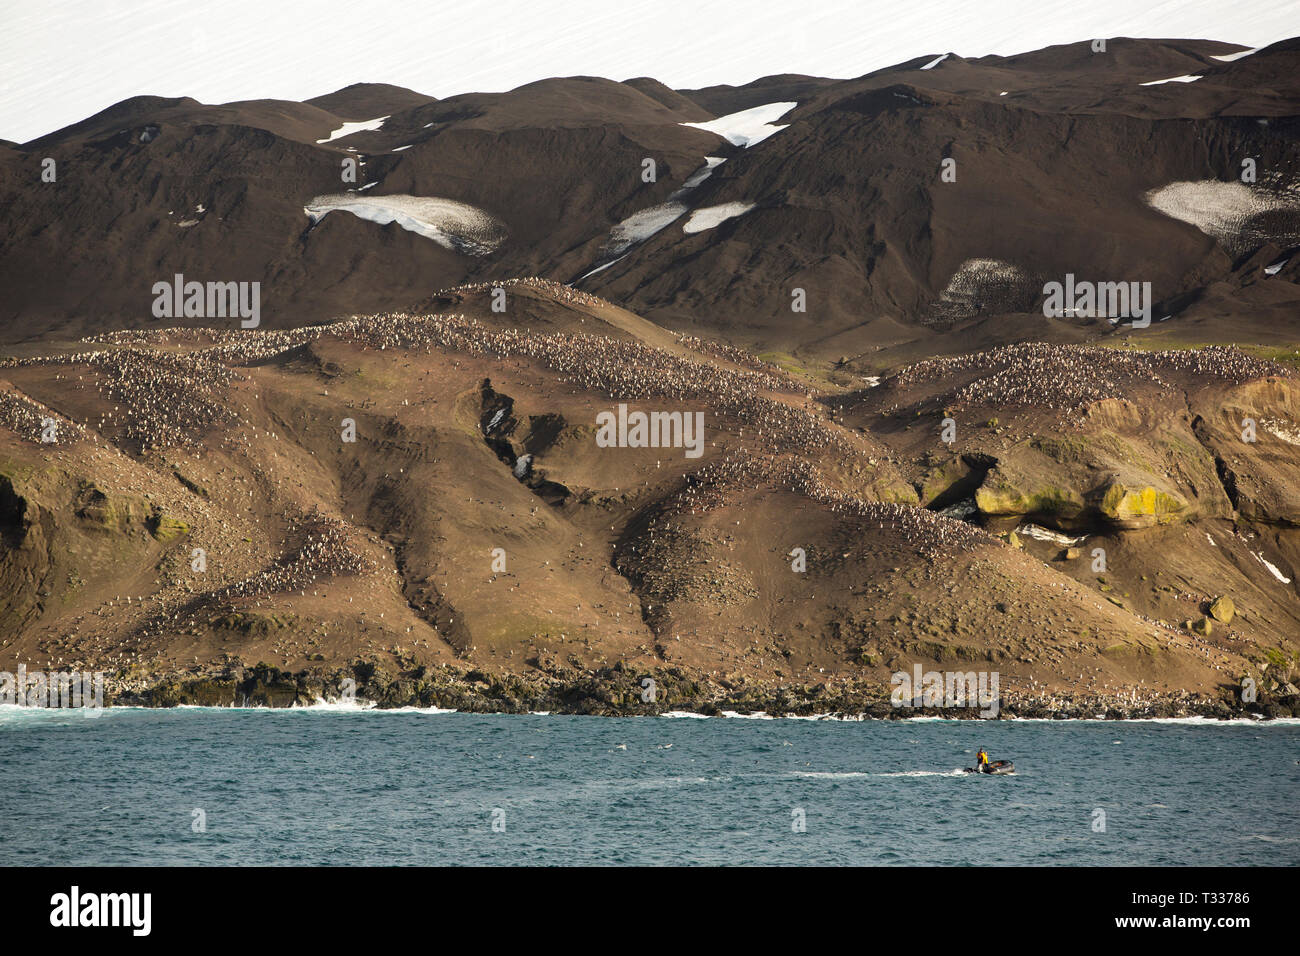 Eine große Kolonie von Pinguinen, Kinnriemen Pygoscelis antarcticus auf Deception Island in der Antarktis. Stockfoto